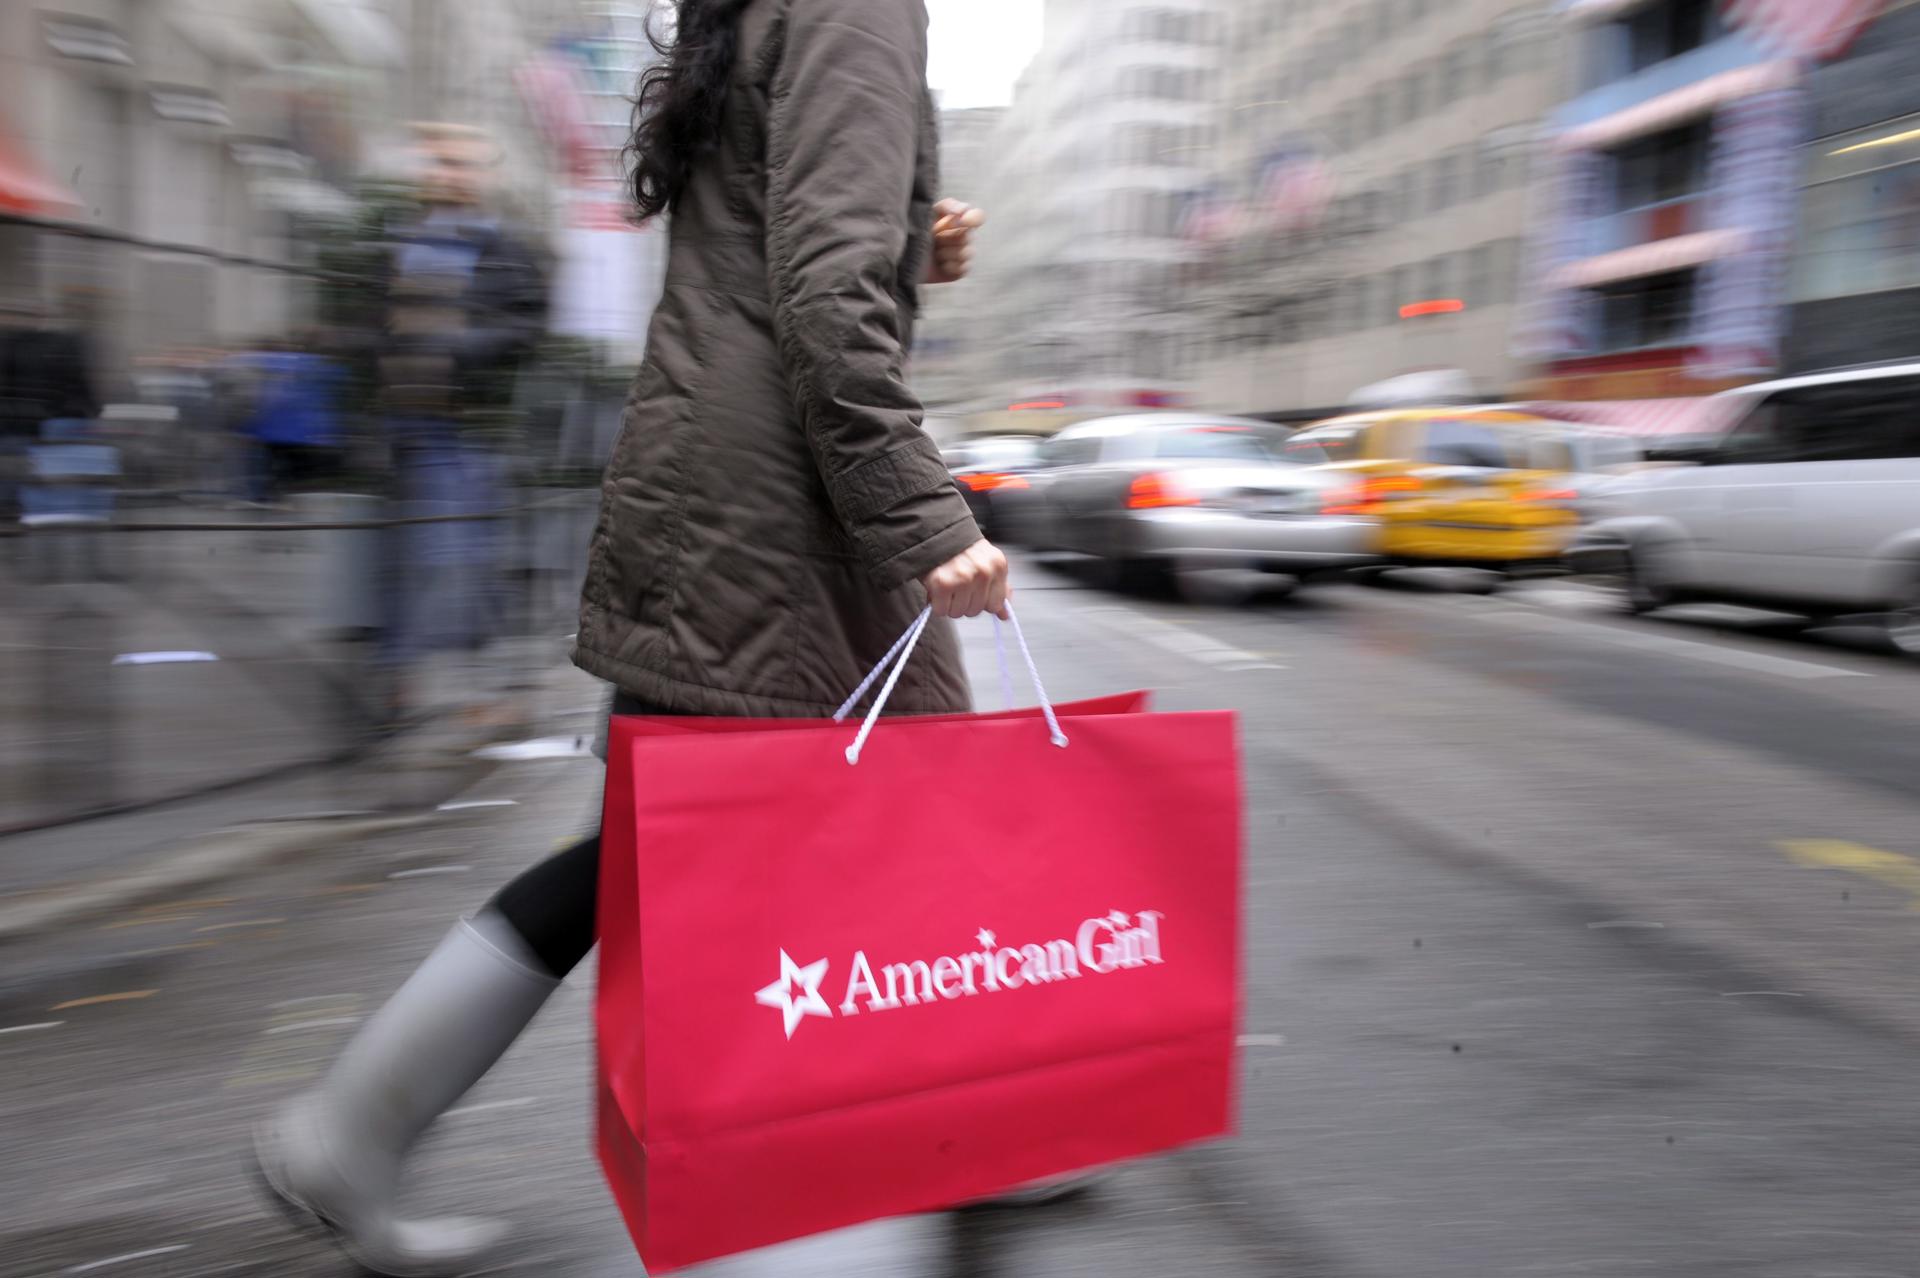 Una mujer carga una bolsa luego de realizar una compra en Nueva York (EEUU). Fotografía de archivo. EFE/ANDREW GOMBERT